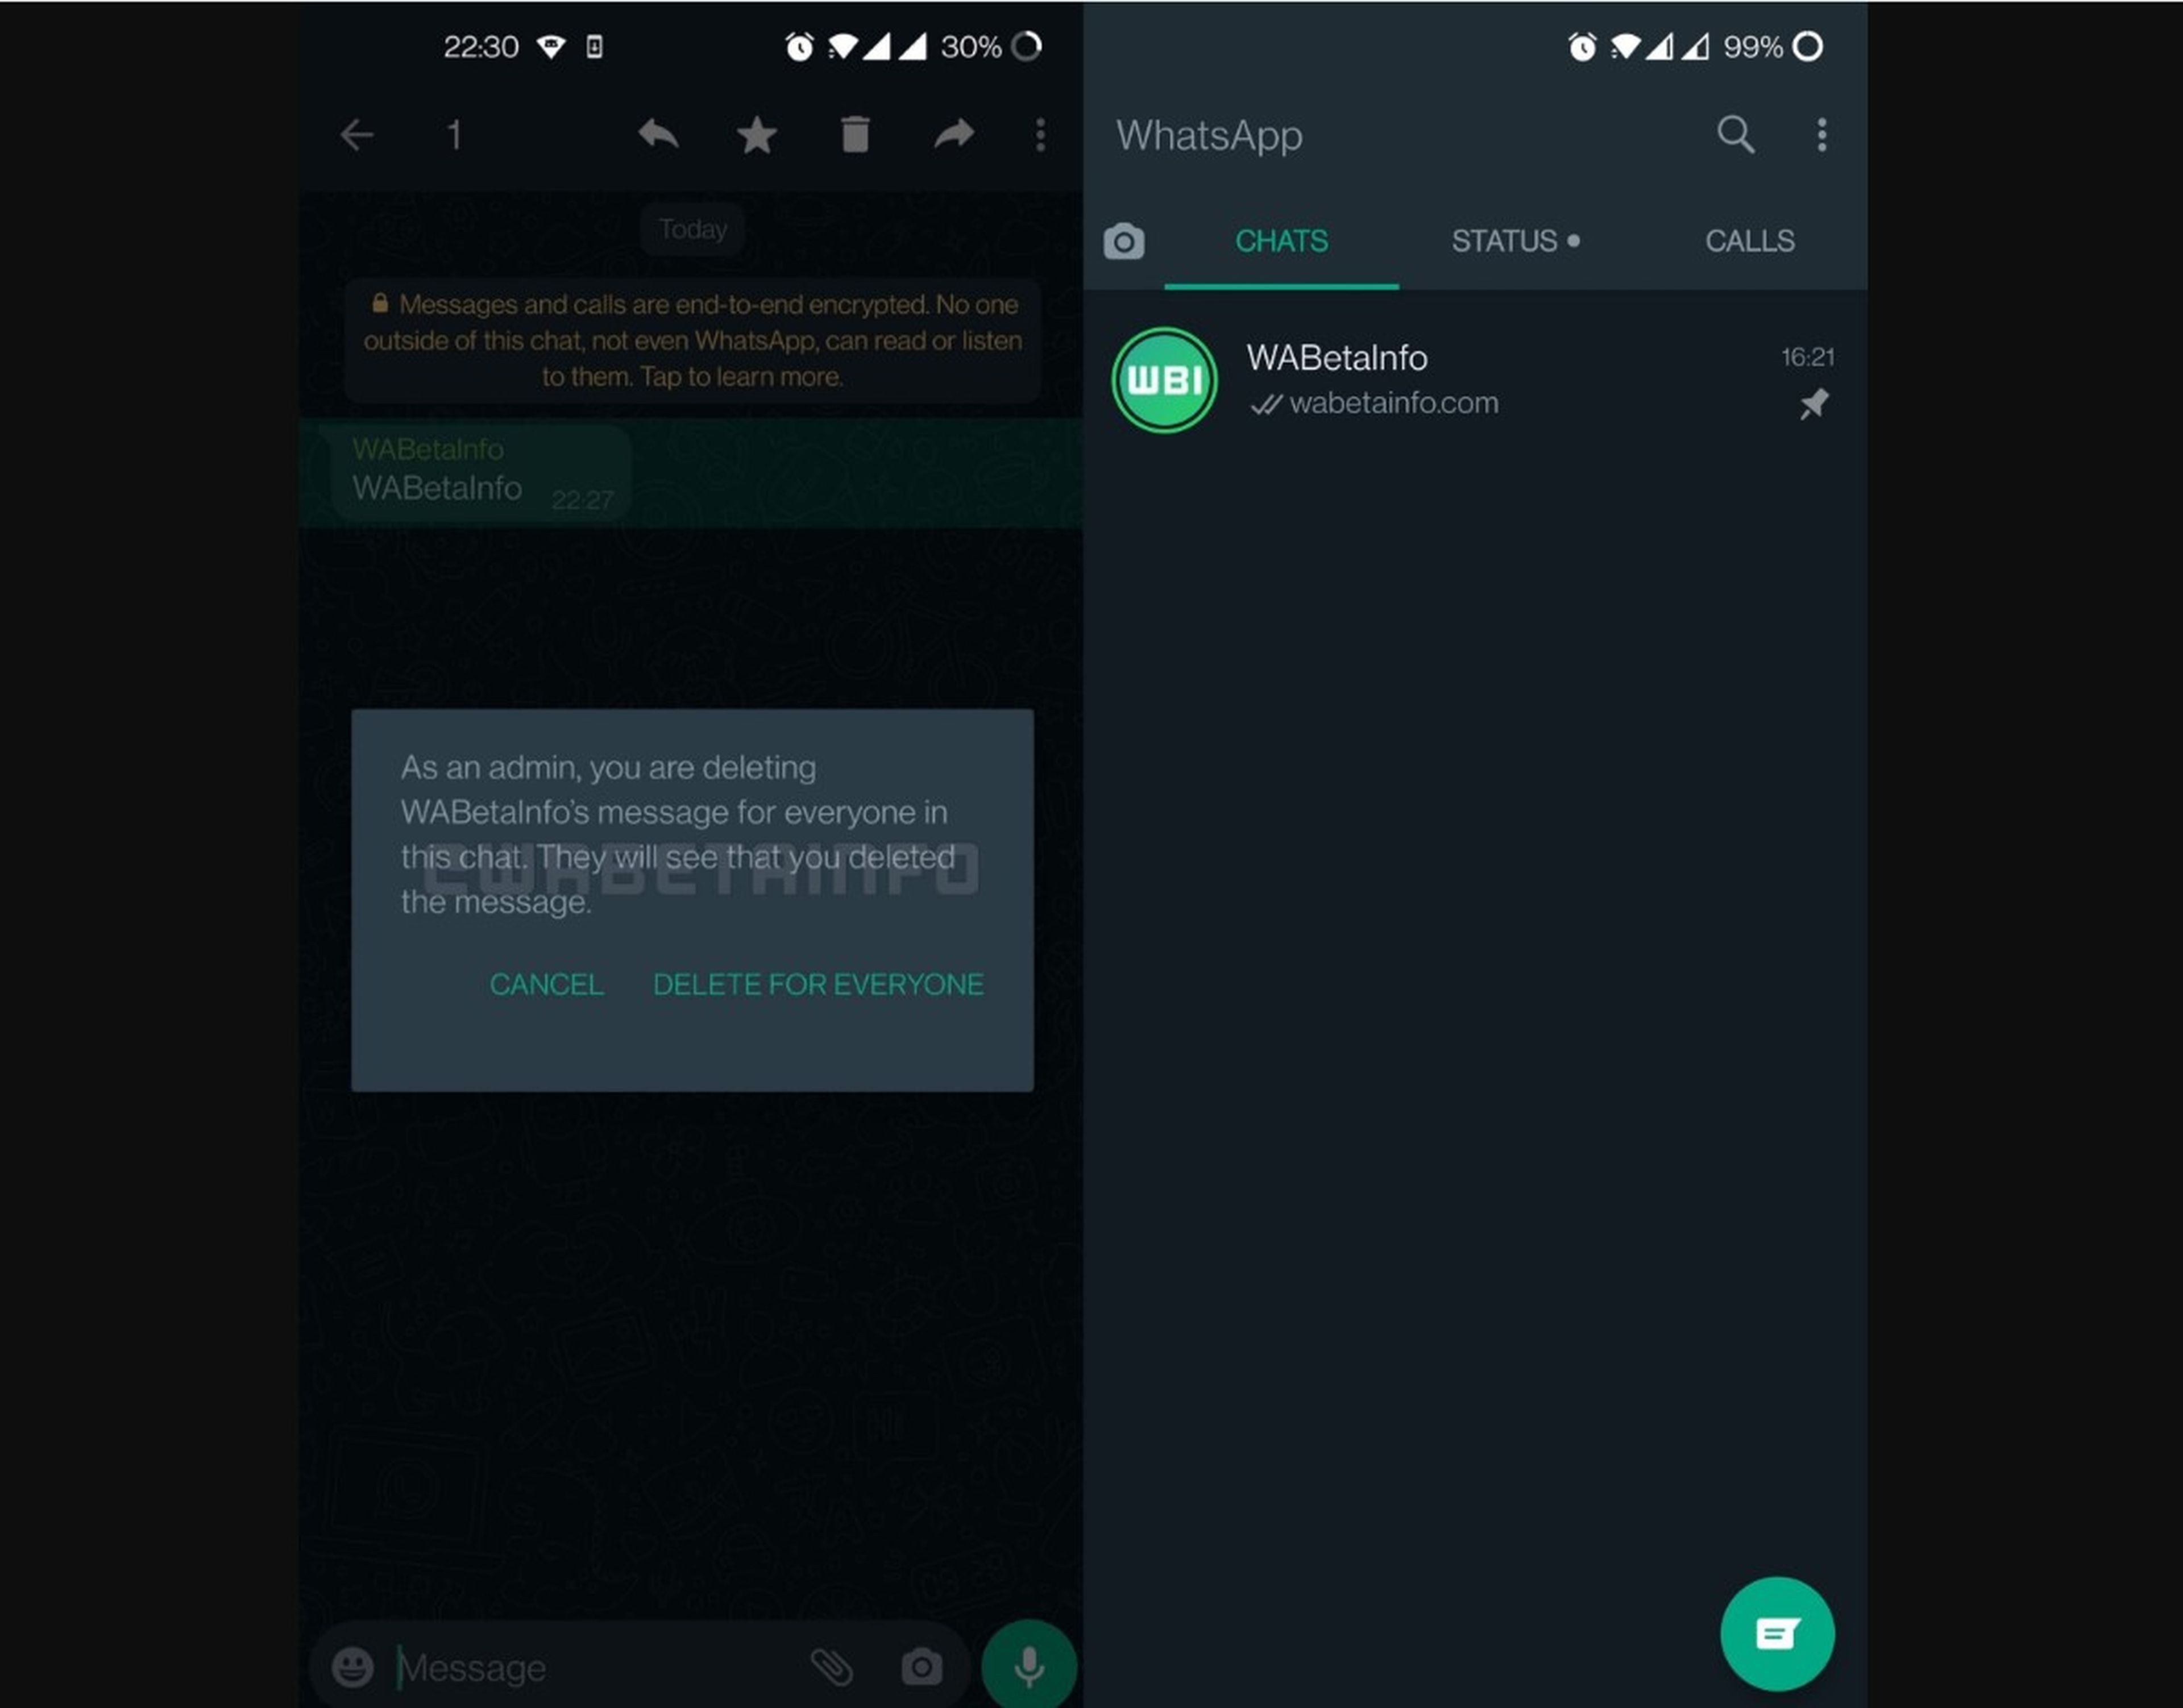 WhatsApp incluye las actualizaciones de estado dentro de la lista de chats y extiende a más usuarios algunas de sus funciones